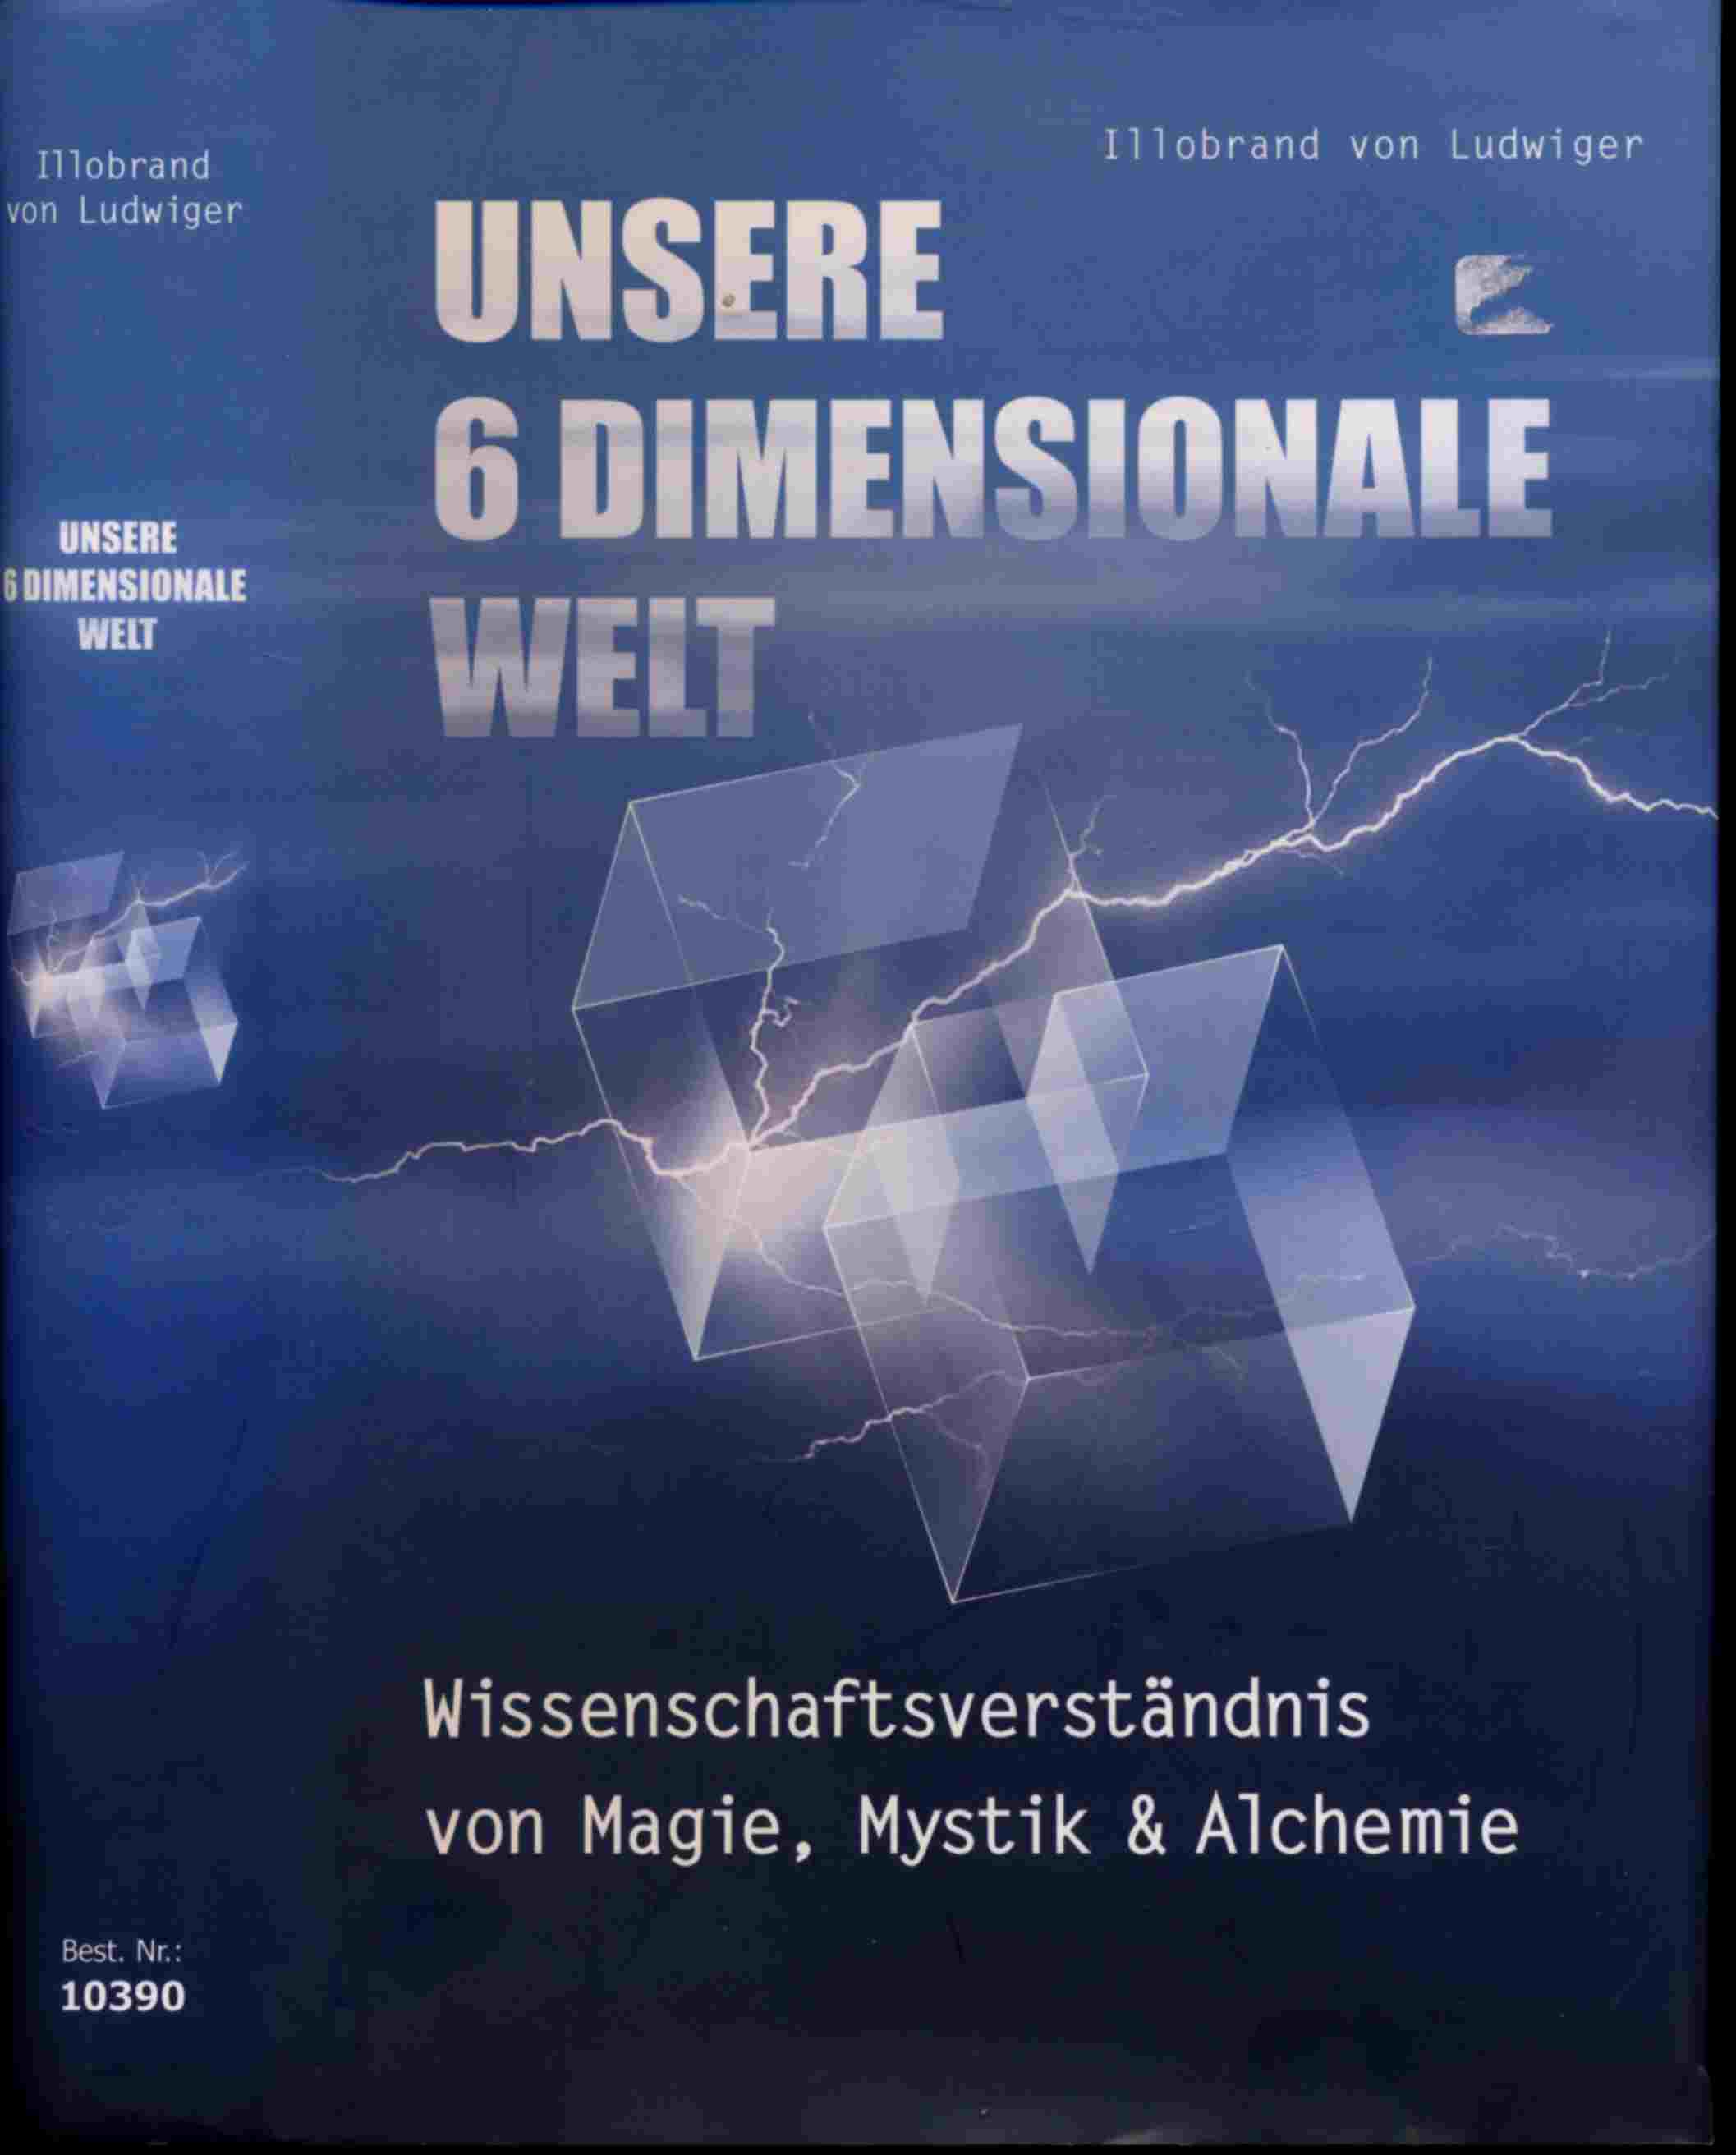 LUDWIGER, Illobrand v.  Unsere 6dimensionale Welt. Wissenschaftsverständnis von Magie, Mystik und Alchemie. 